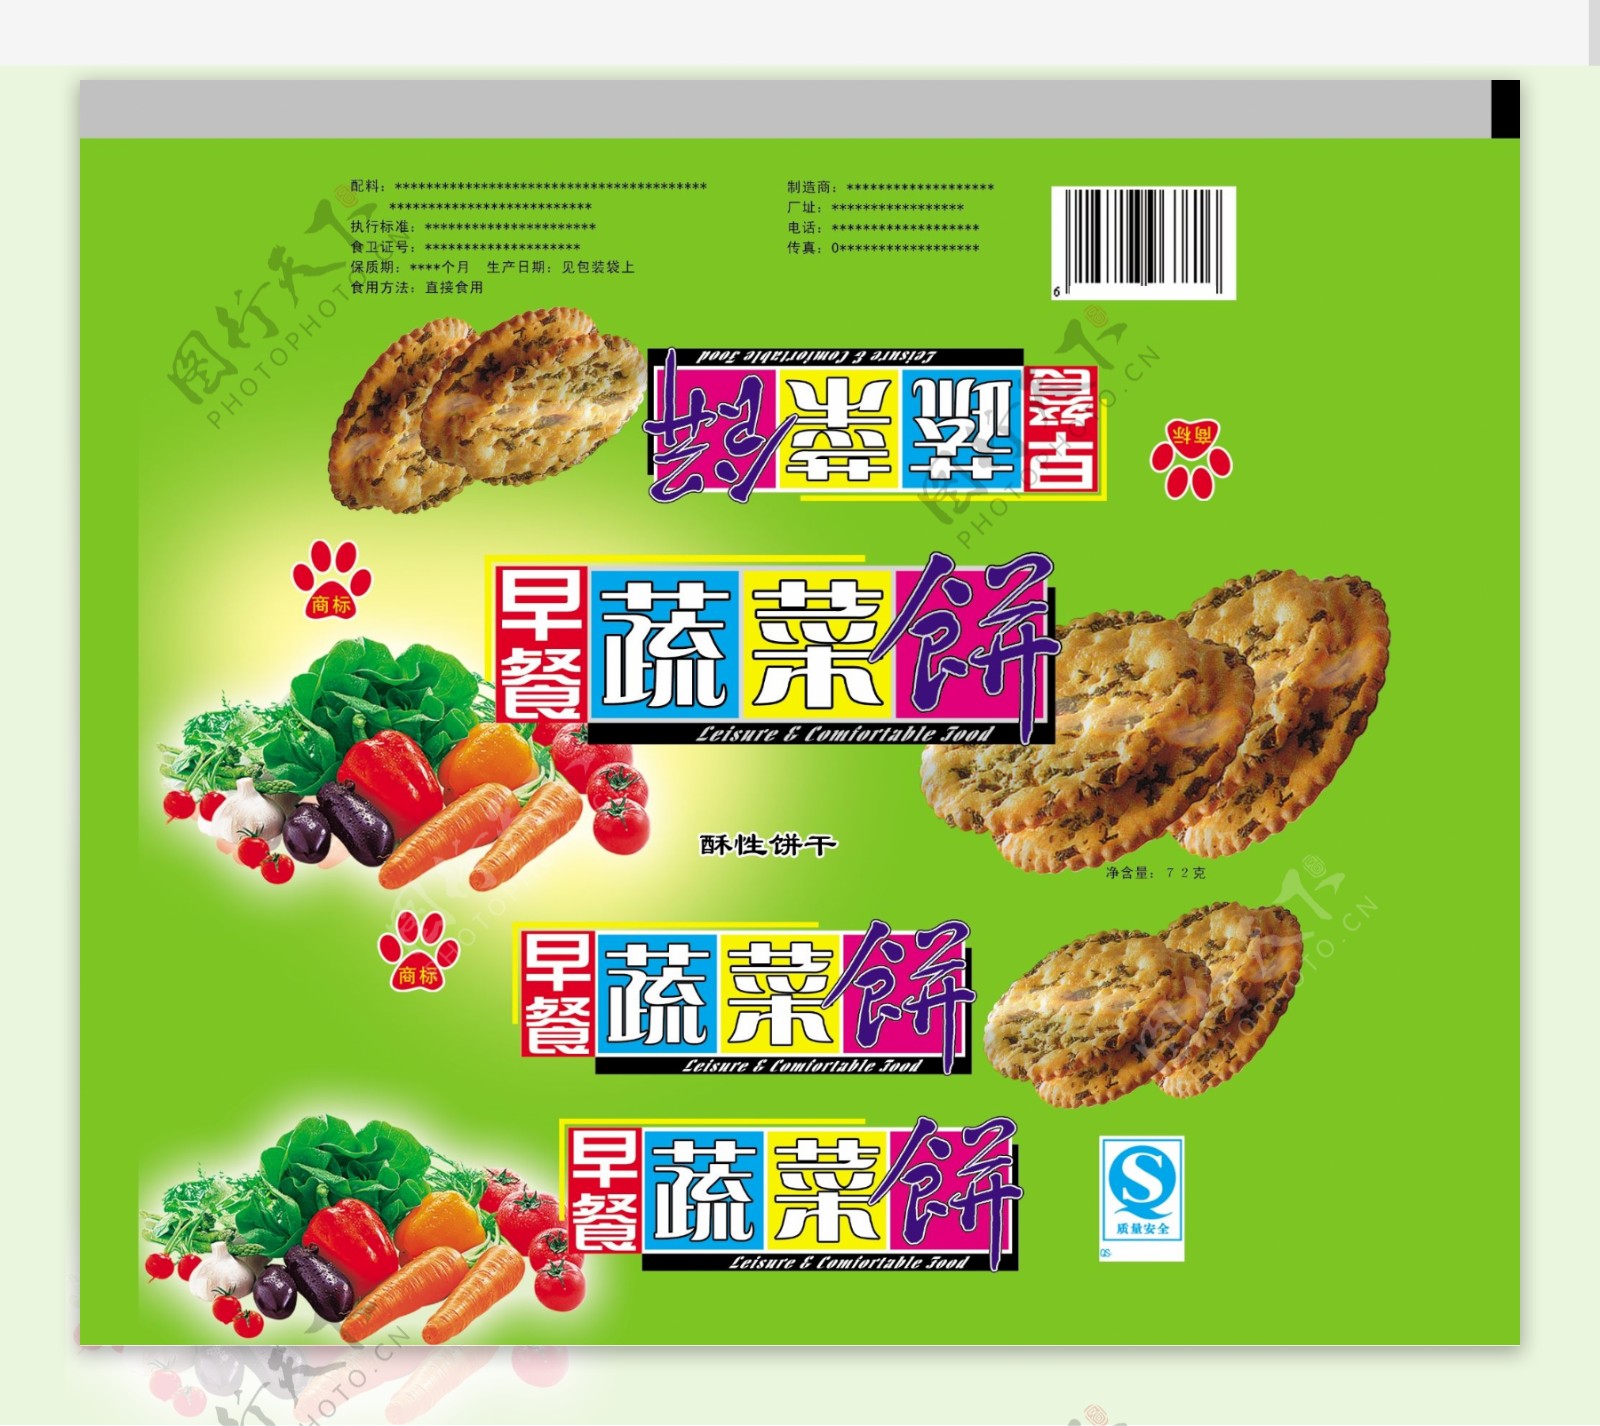 青菜食品包装设计广告设计模板